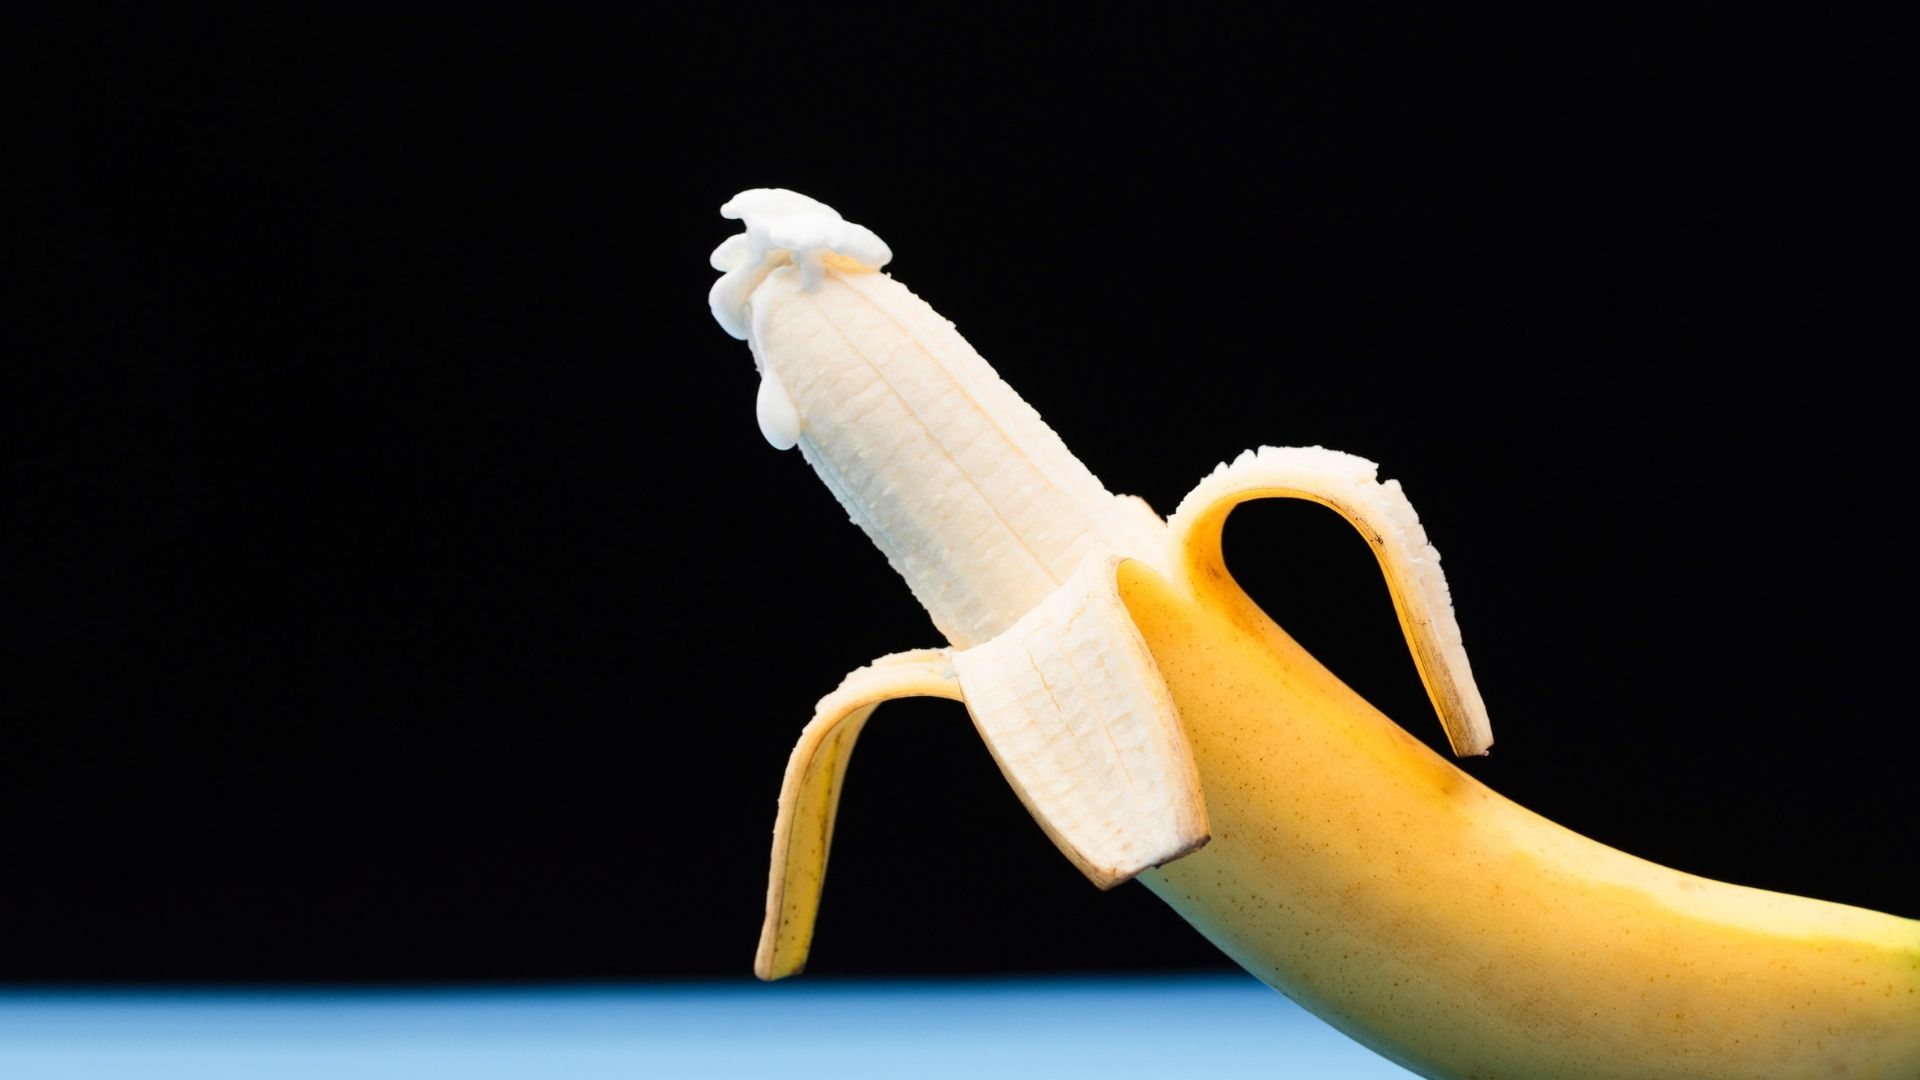 Banane – éjaculation – homme – agression